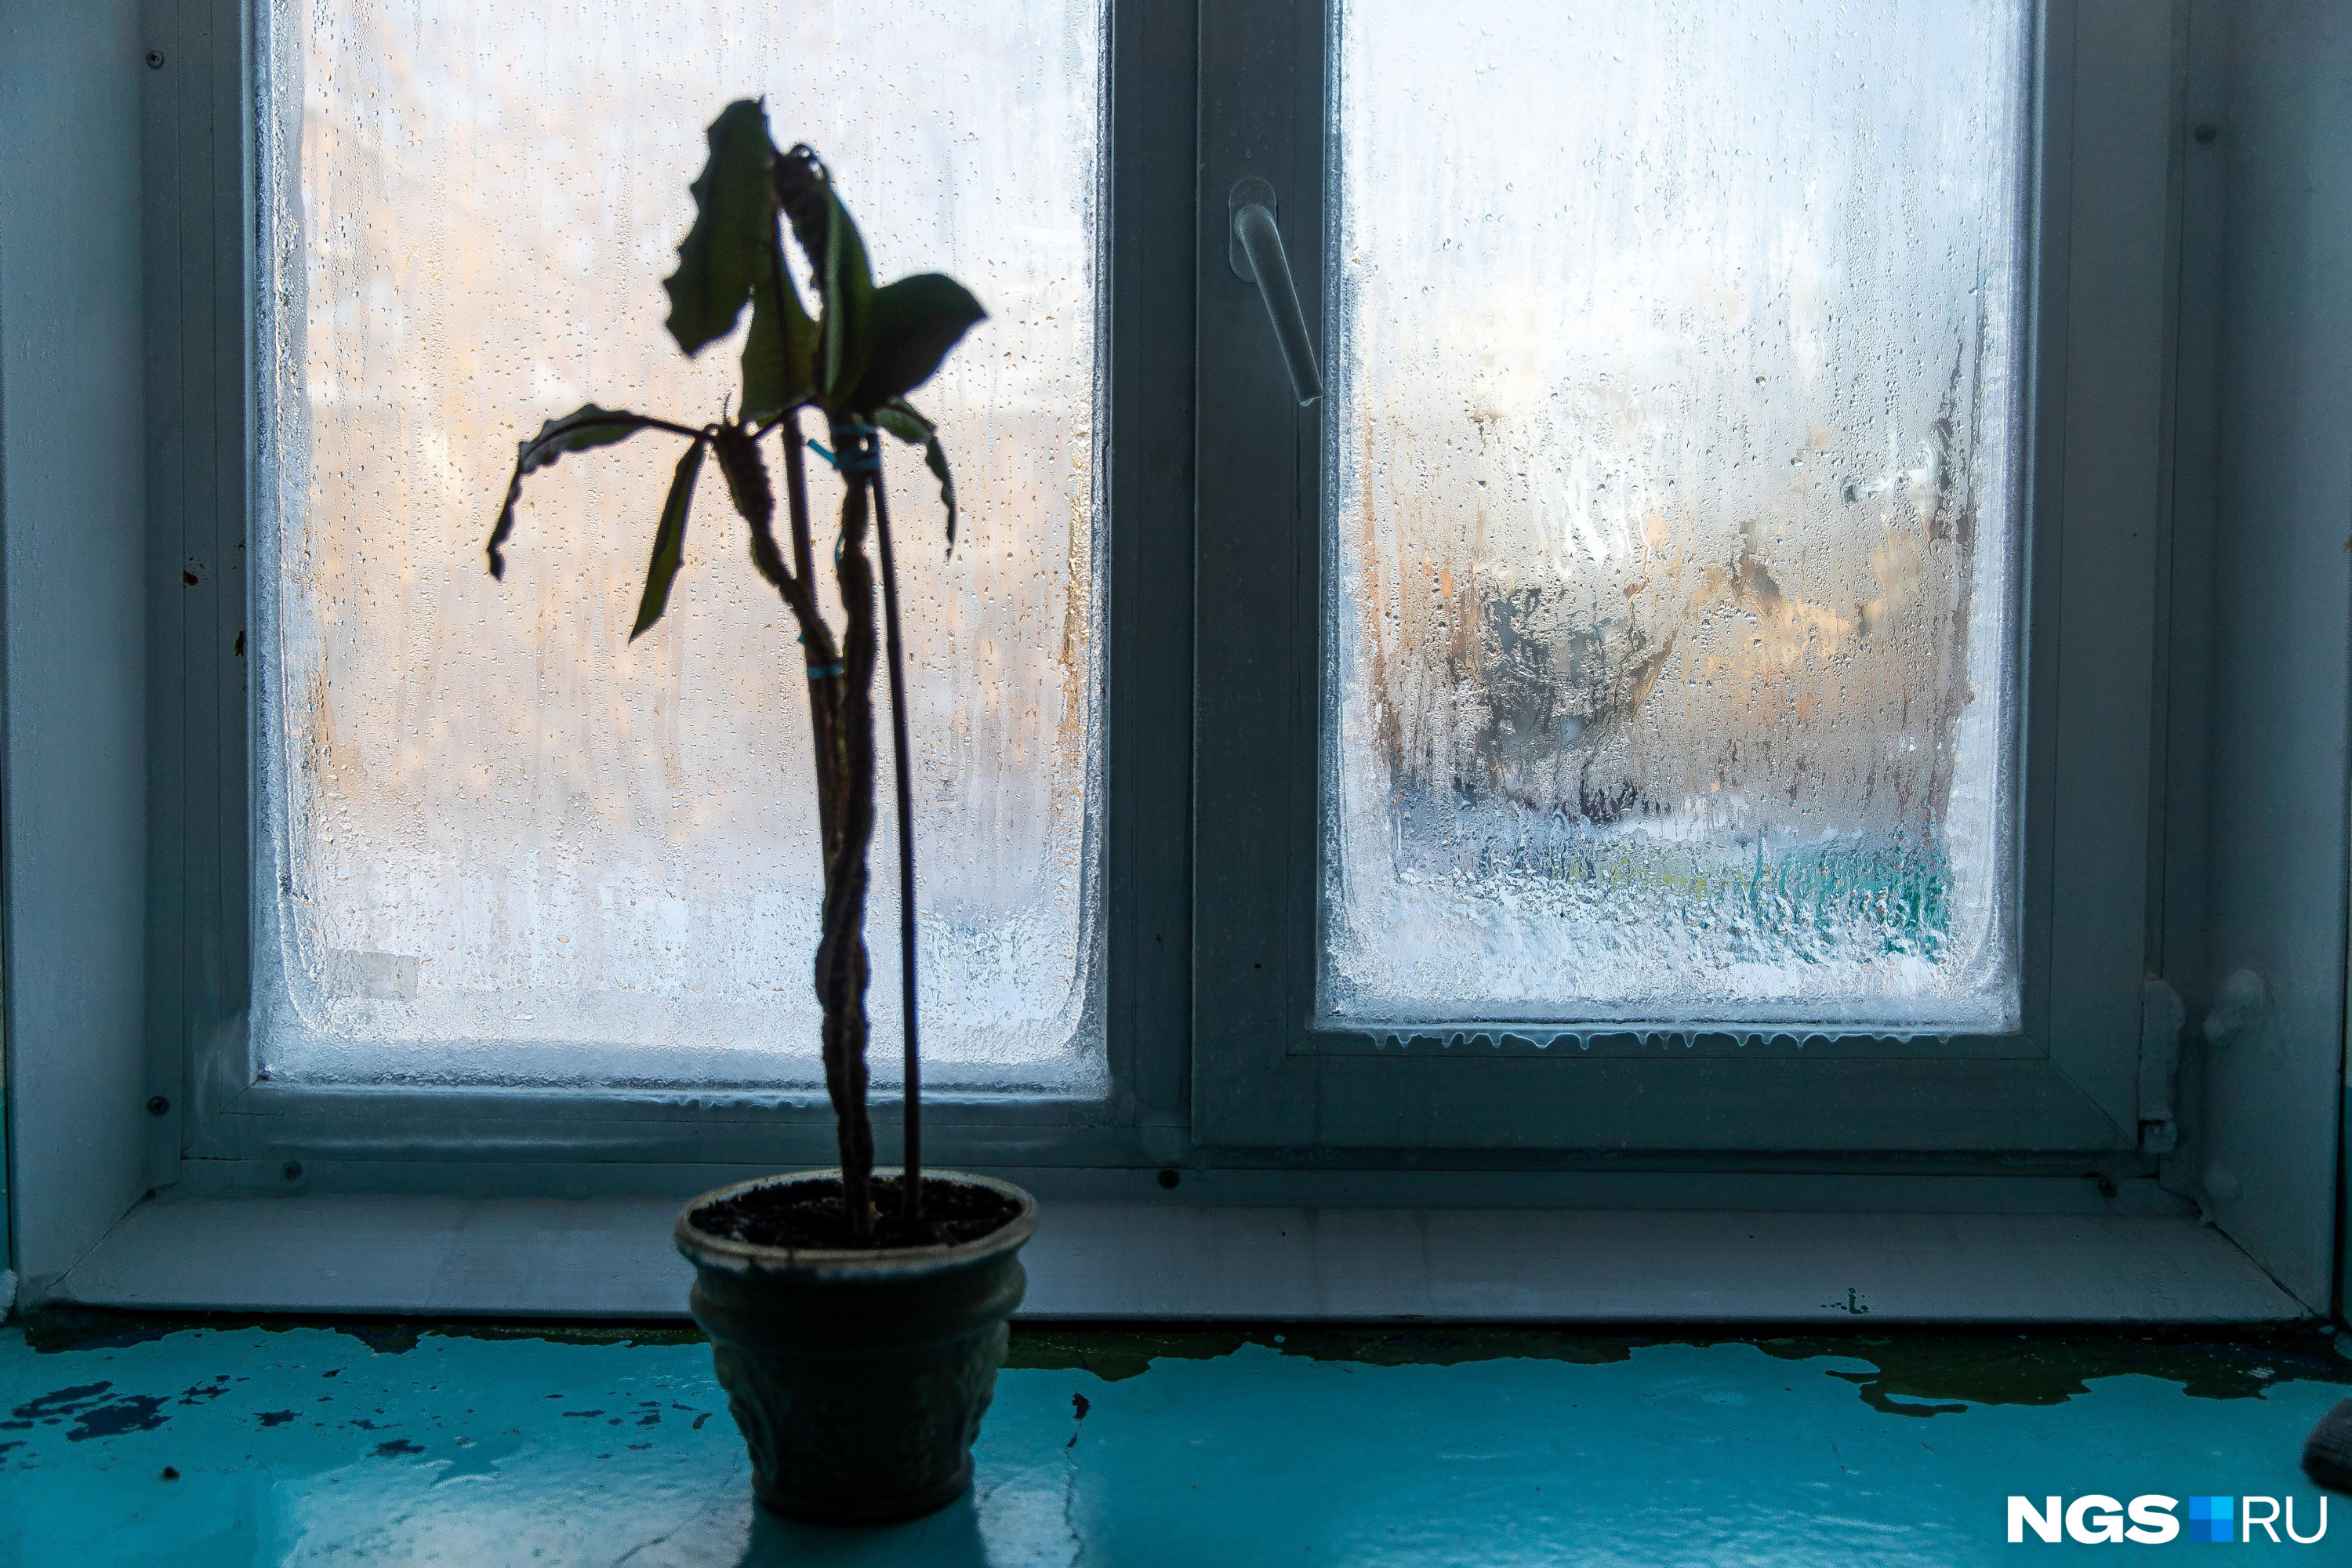 Замерзший цветок на обледенелом окне — картина, привычная едва ли не всем жителям «Башни»